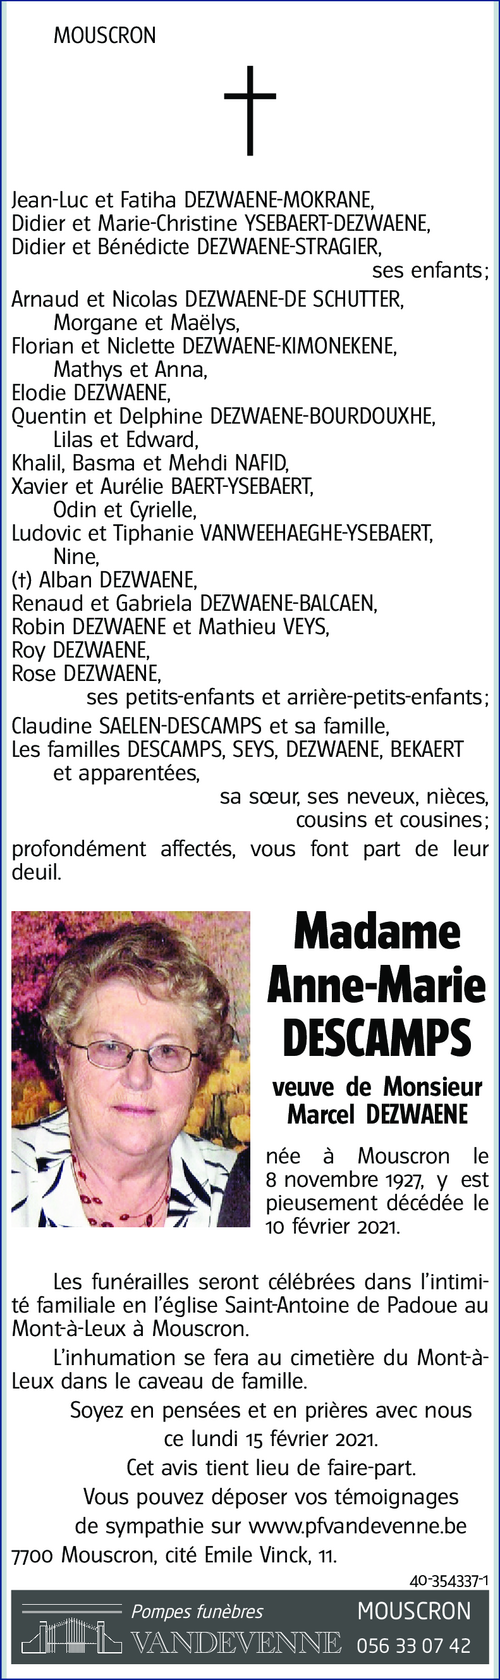 Anne-Marie DESCAMPS